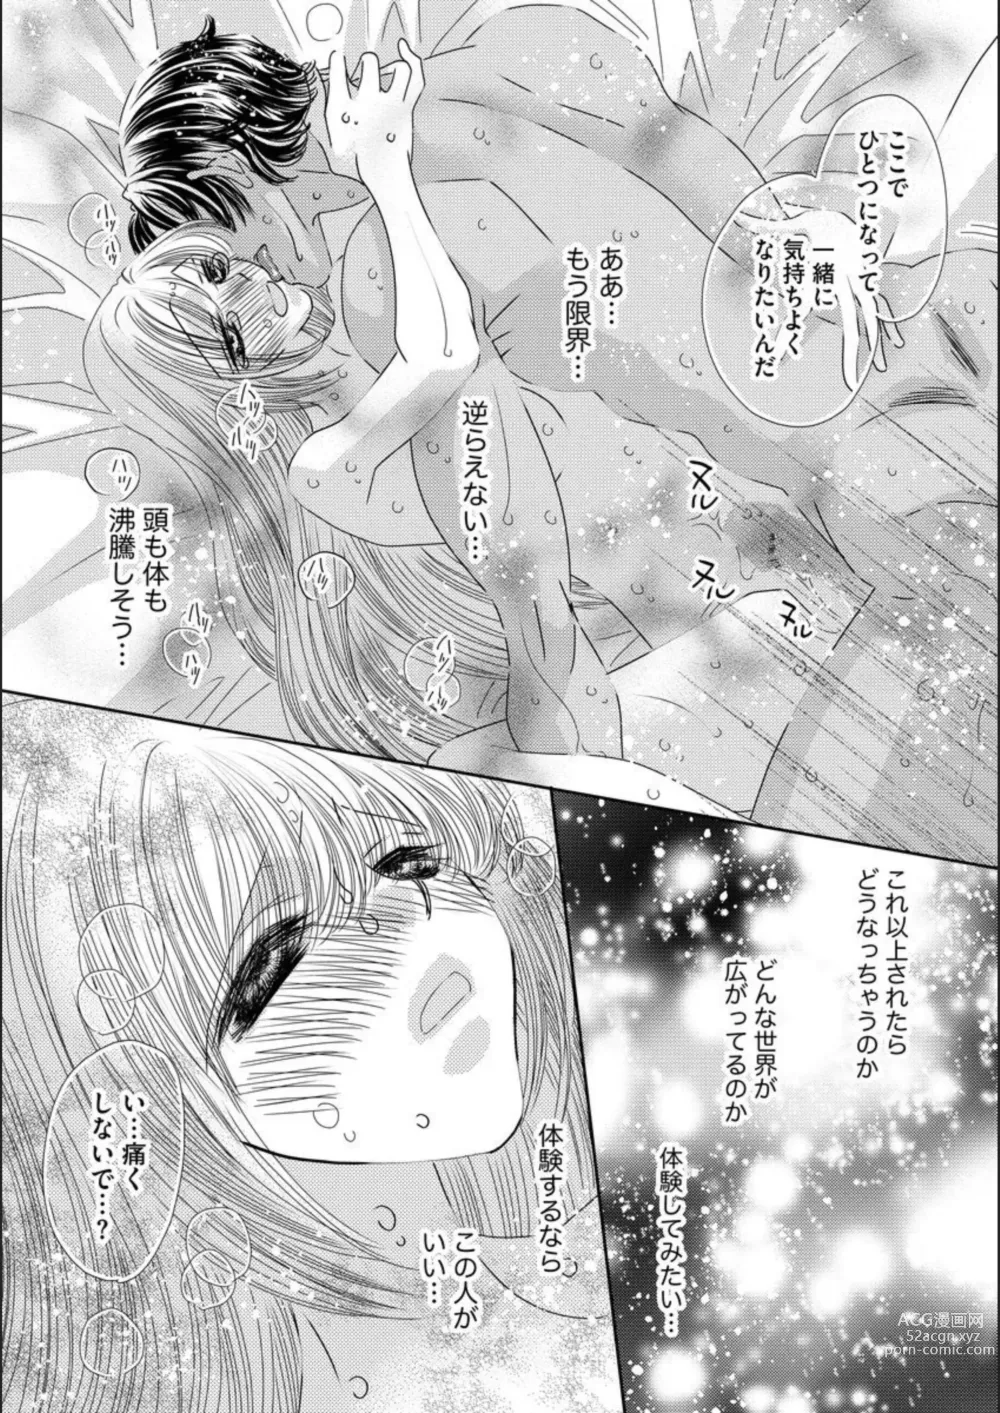 Page 25 of manga Ore-sama Seek no Hanayome Dorei 1